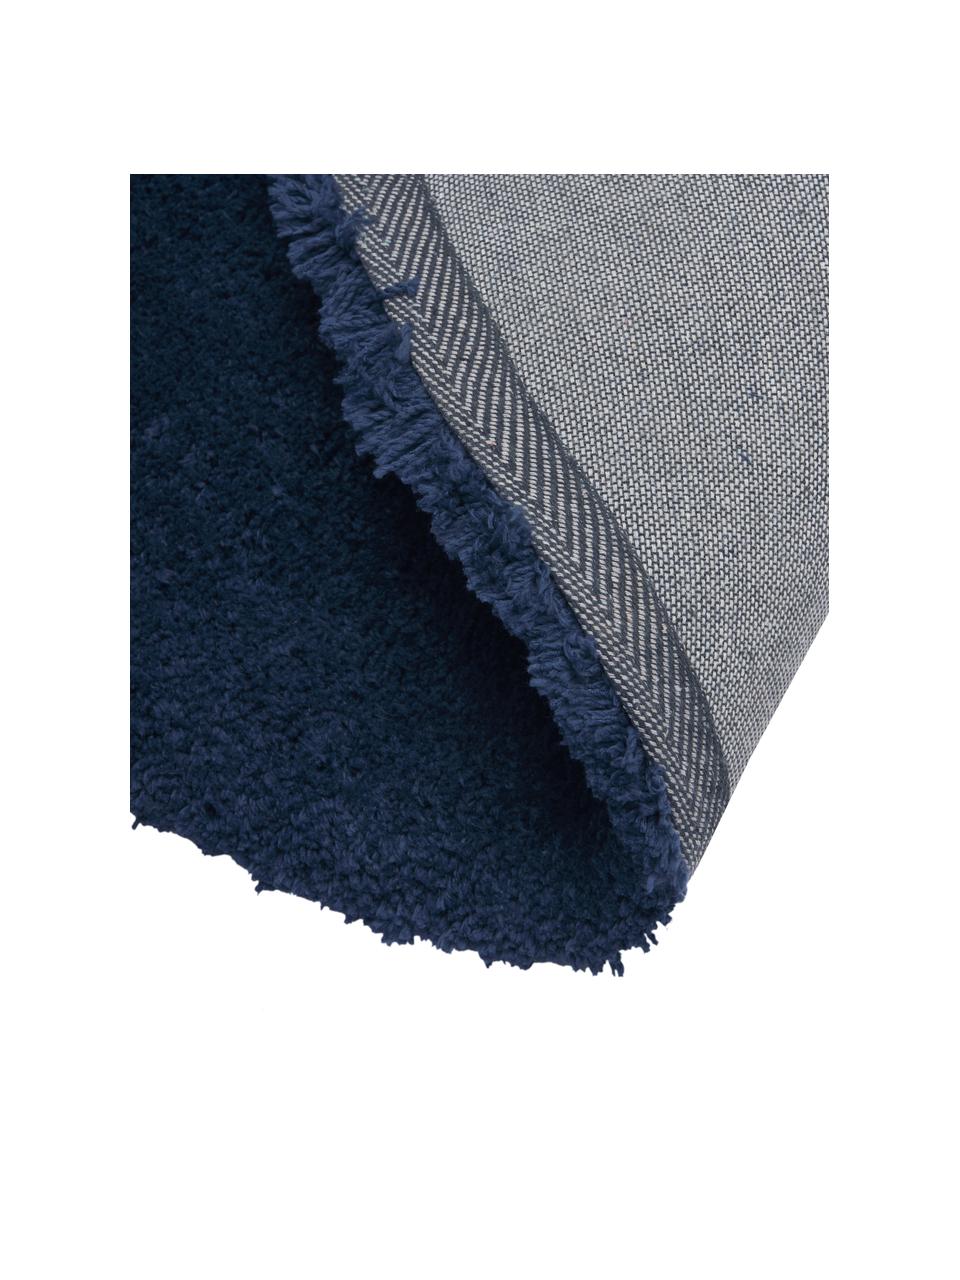 Tappeto rotondo soffice a pelo lungo blu scuro Leighton, Retro: 70% poliestere, 30% coton, Blu scuro, Ø 120 cm (taglia S)